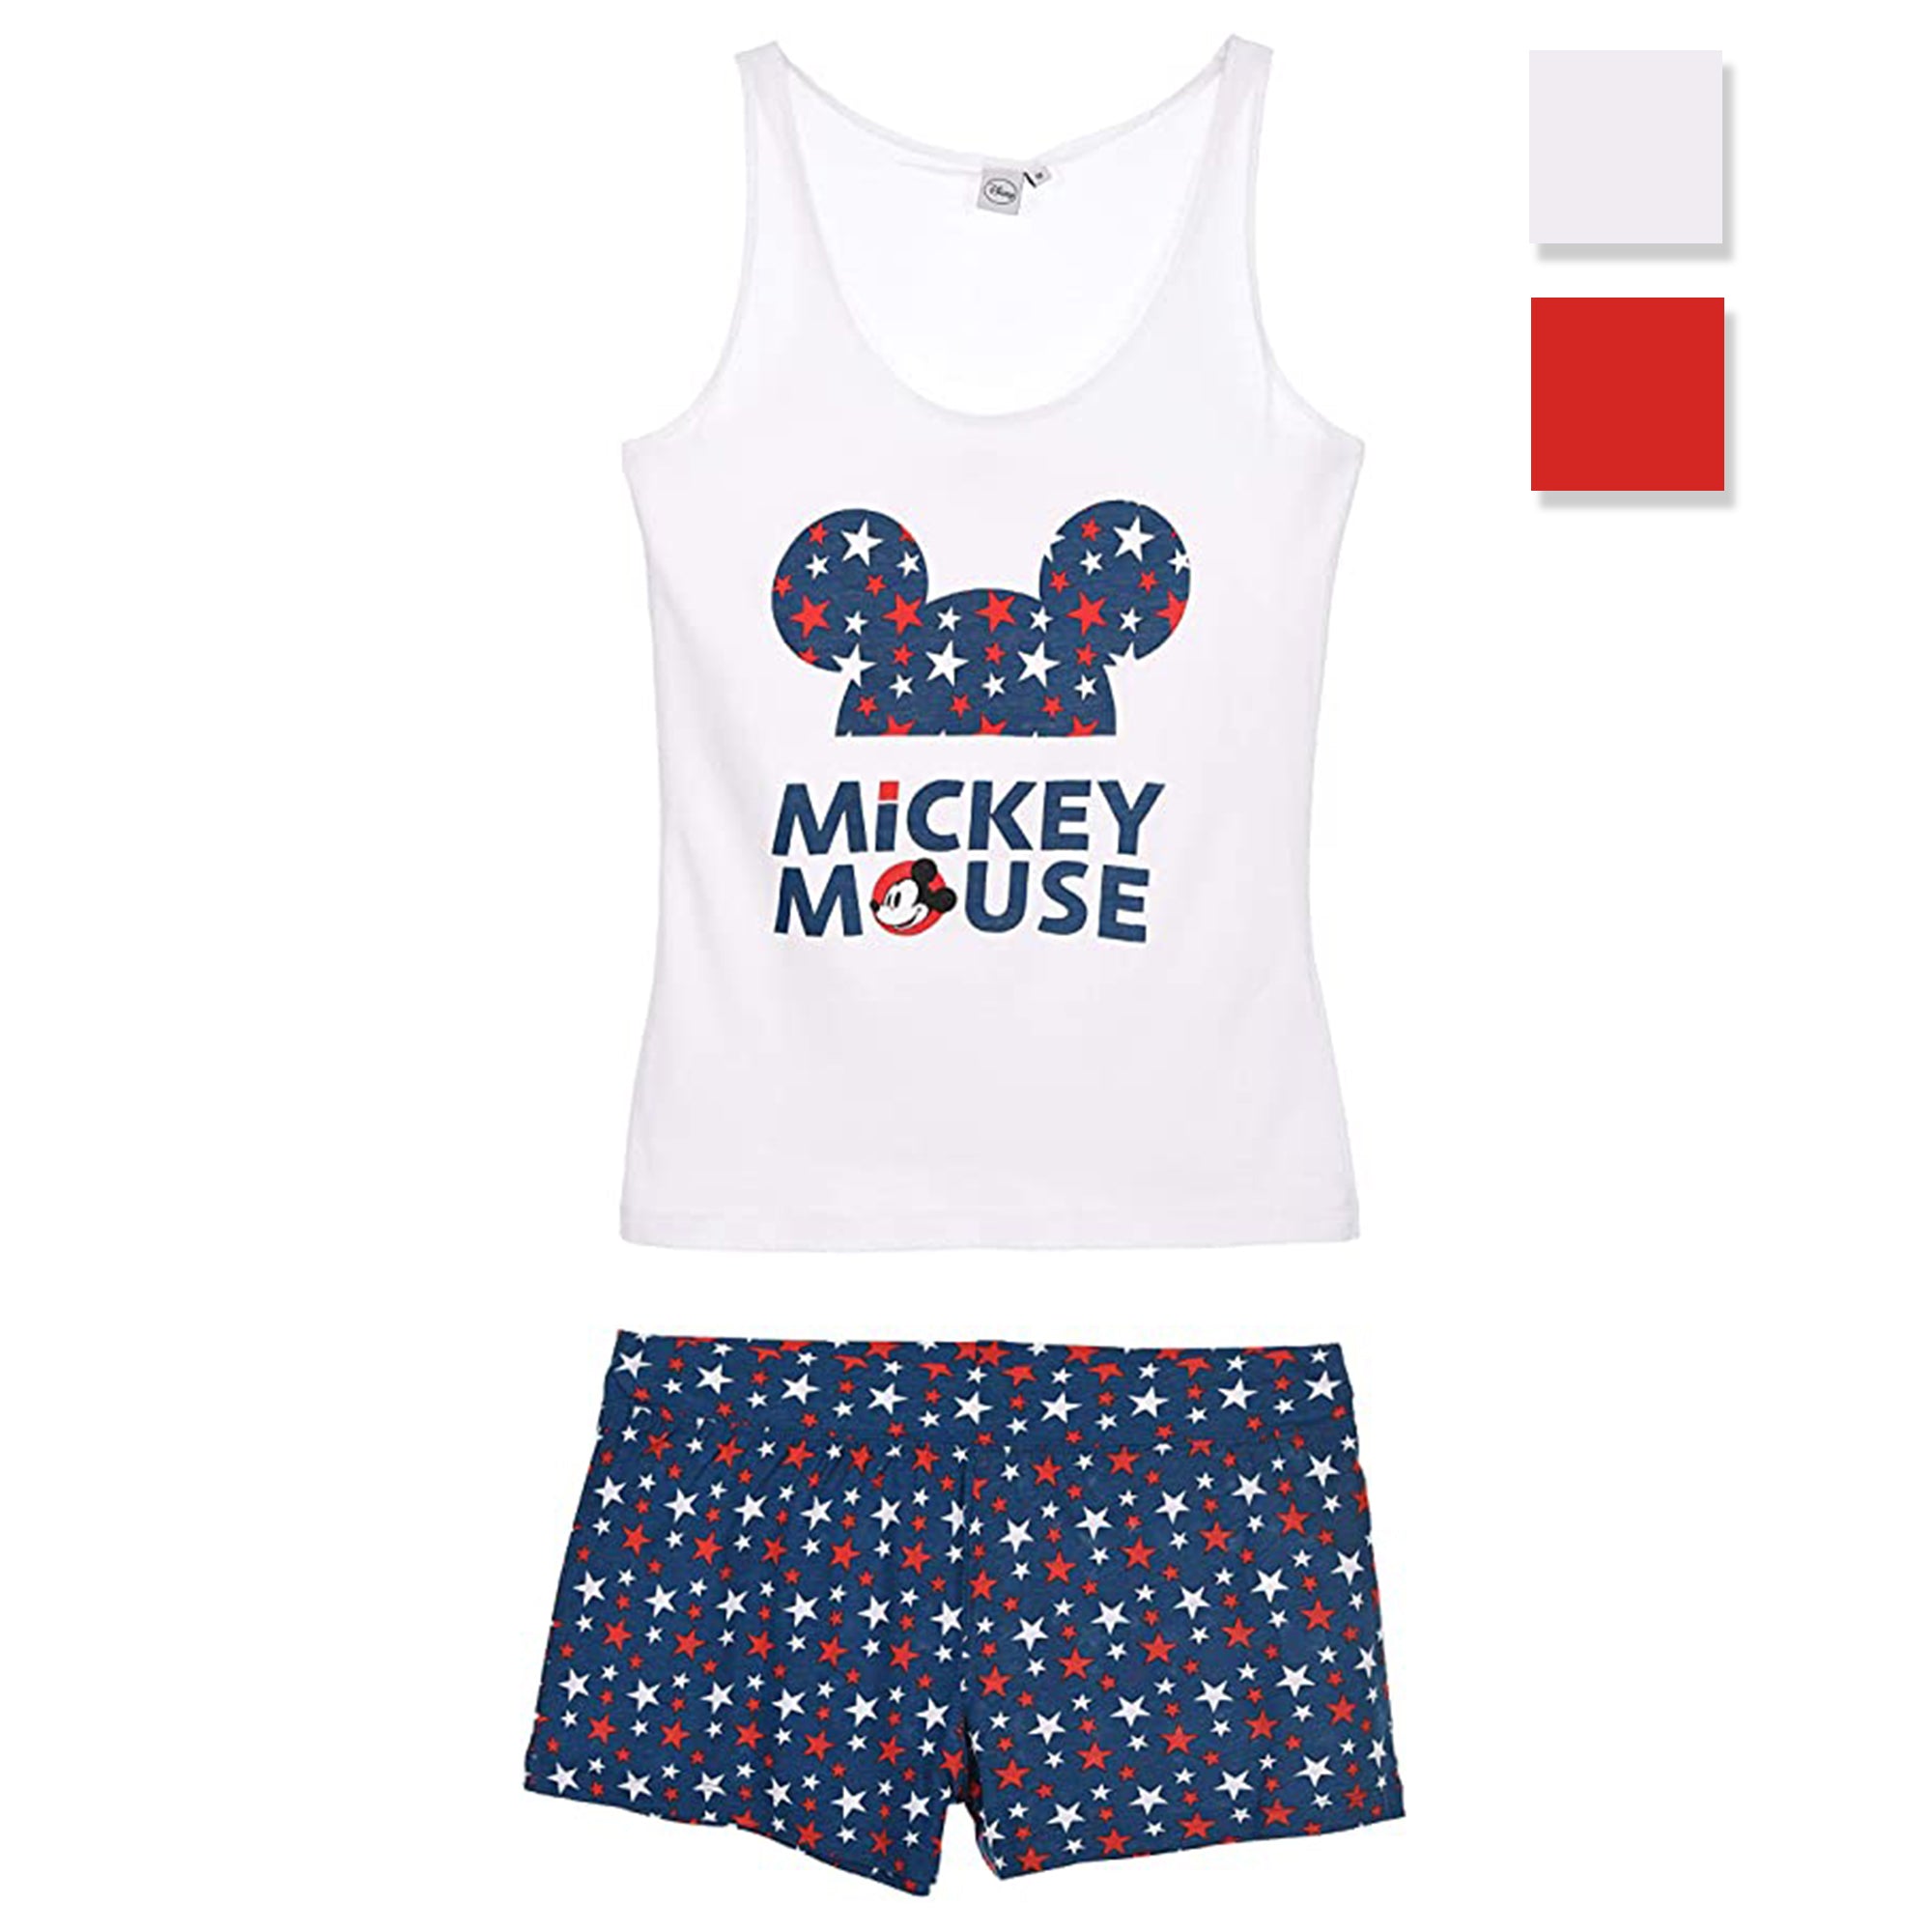 Pigiama corto donna Disney Mickey Mouse canotta e pantaloncino in cotone 2896